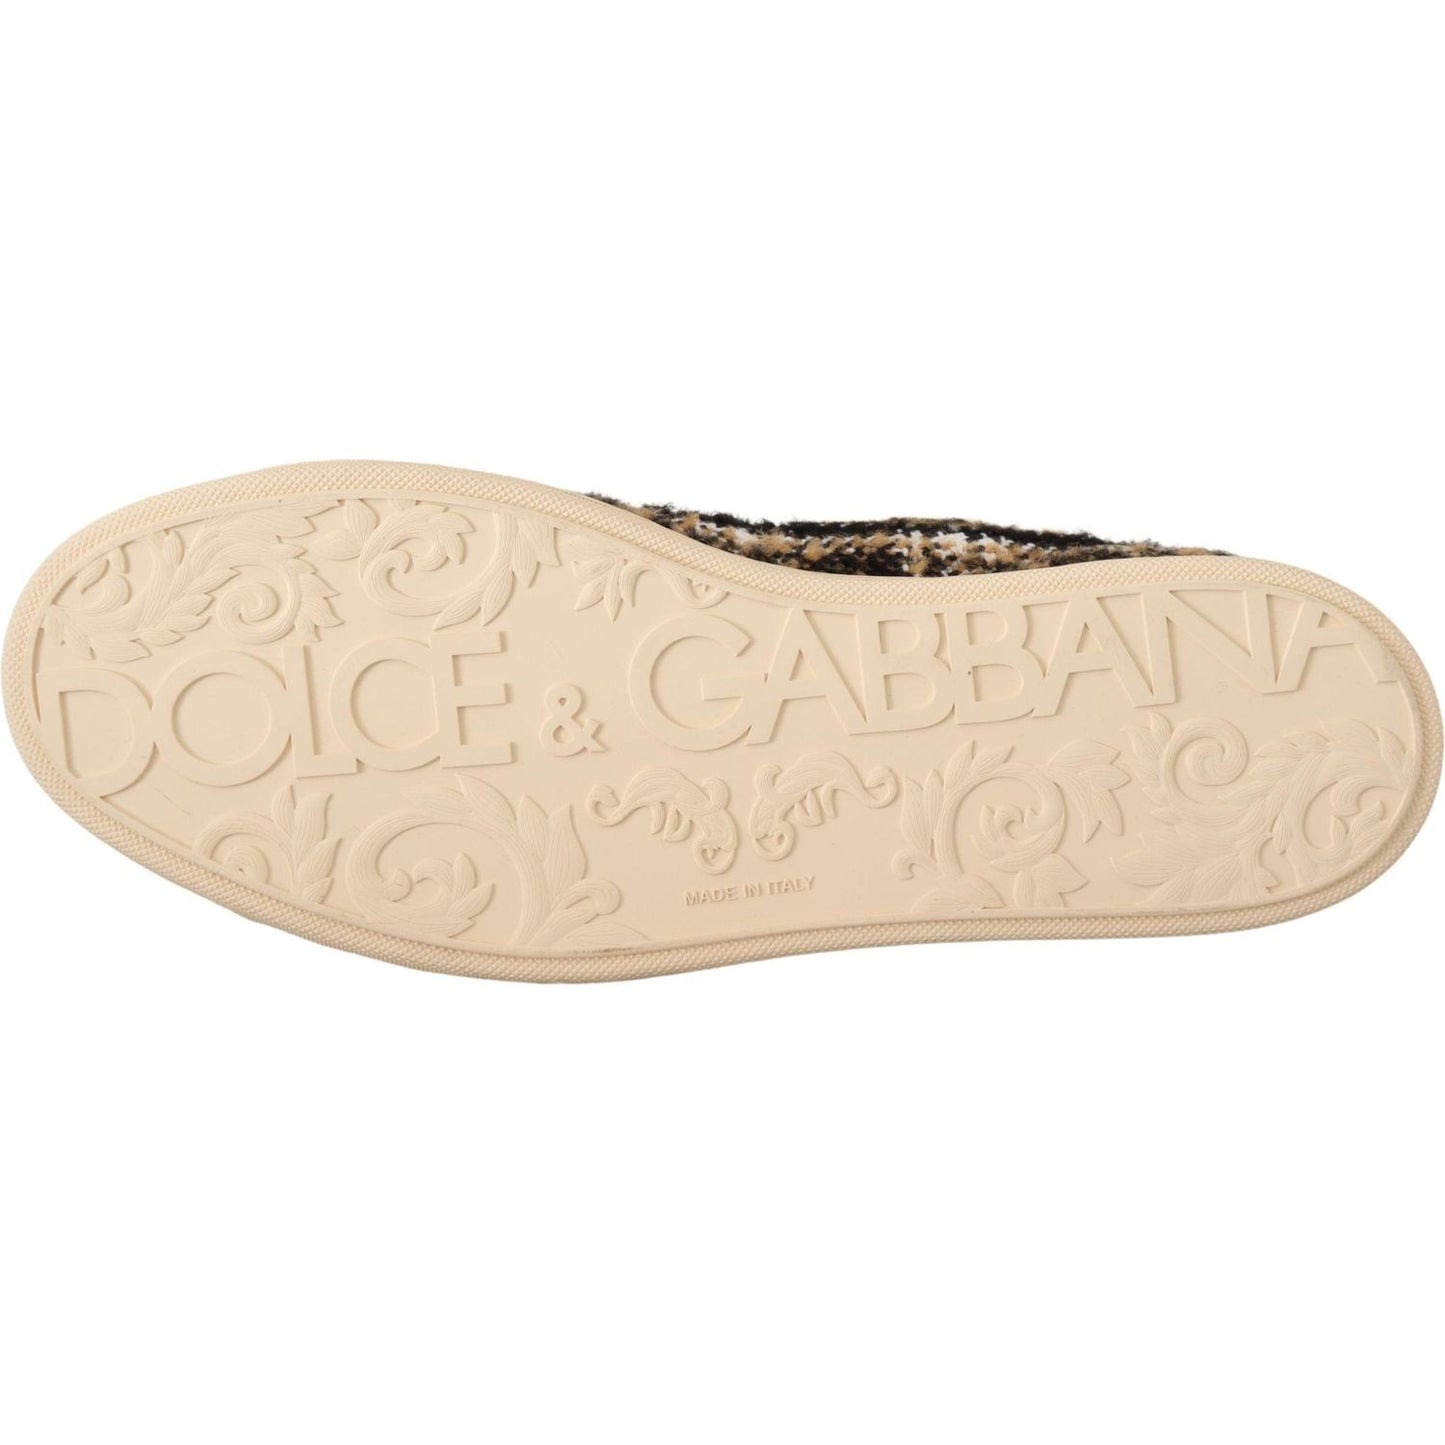 Dolce & Gabbana Beige High Top Fashion Sneakers MAN SNEAKERS beige-brown-wool-cotton-high-top-sneakers IMG_9858-scaled-2fa19a09-c7f.jpg